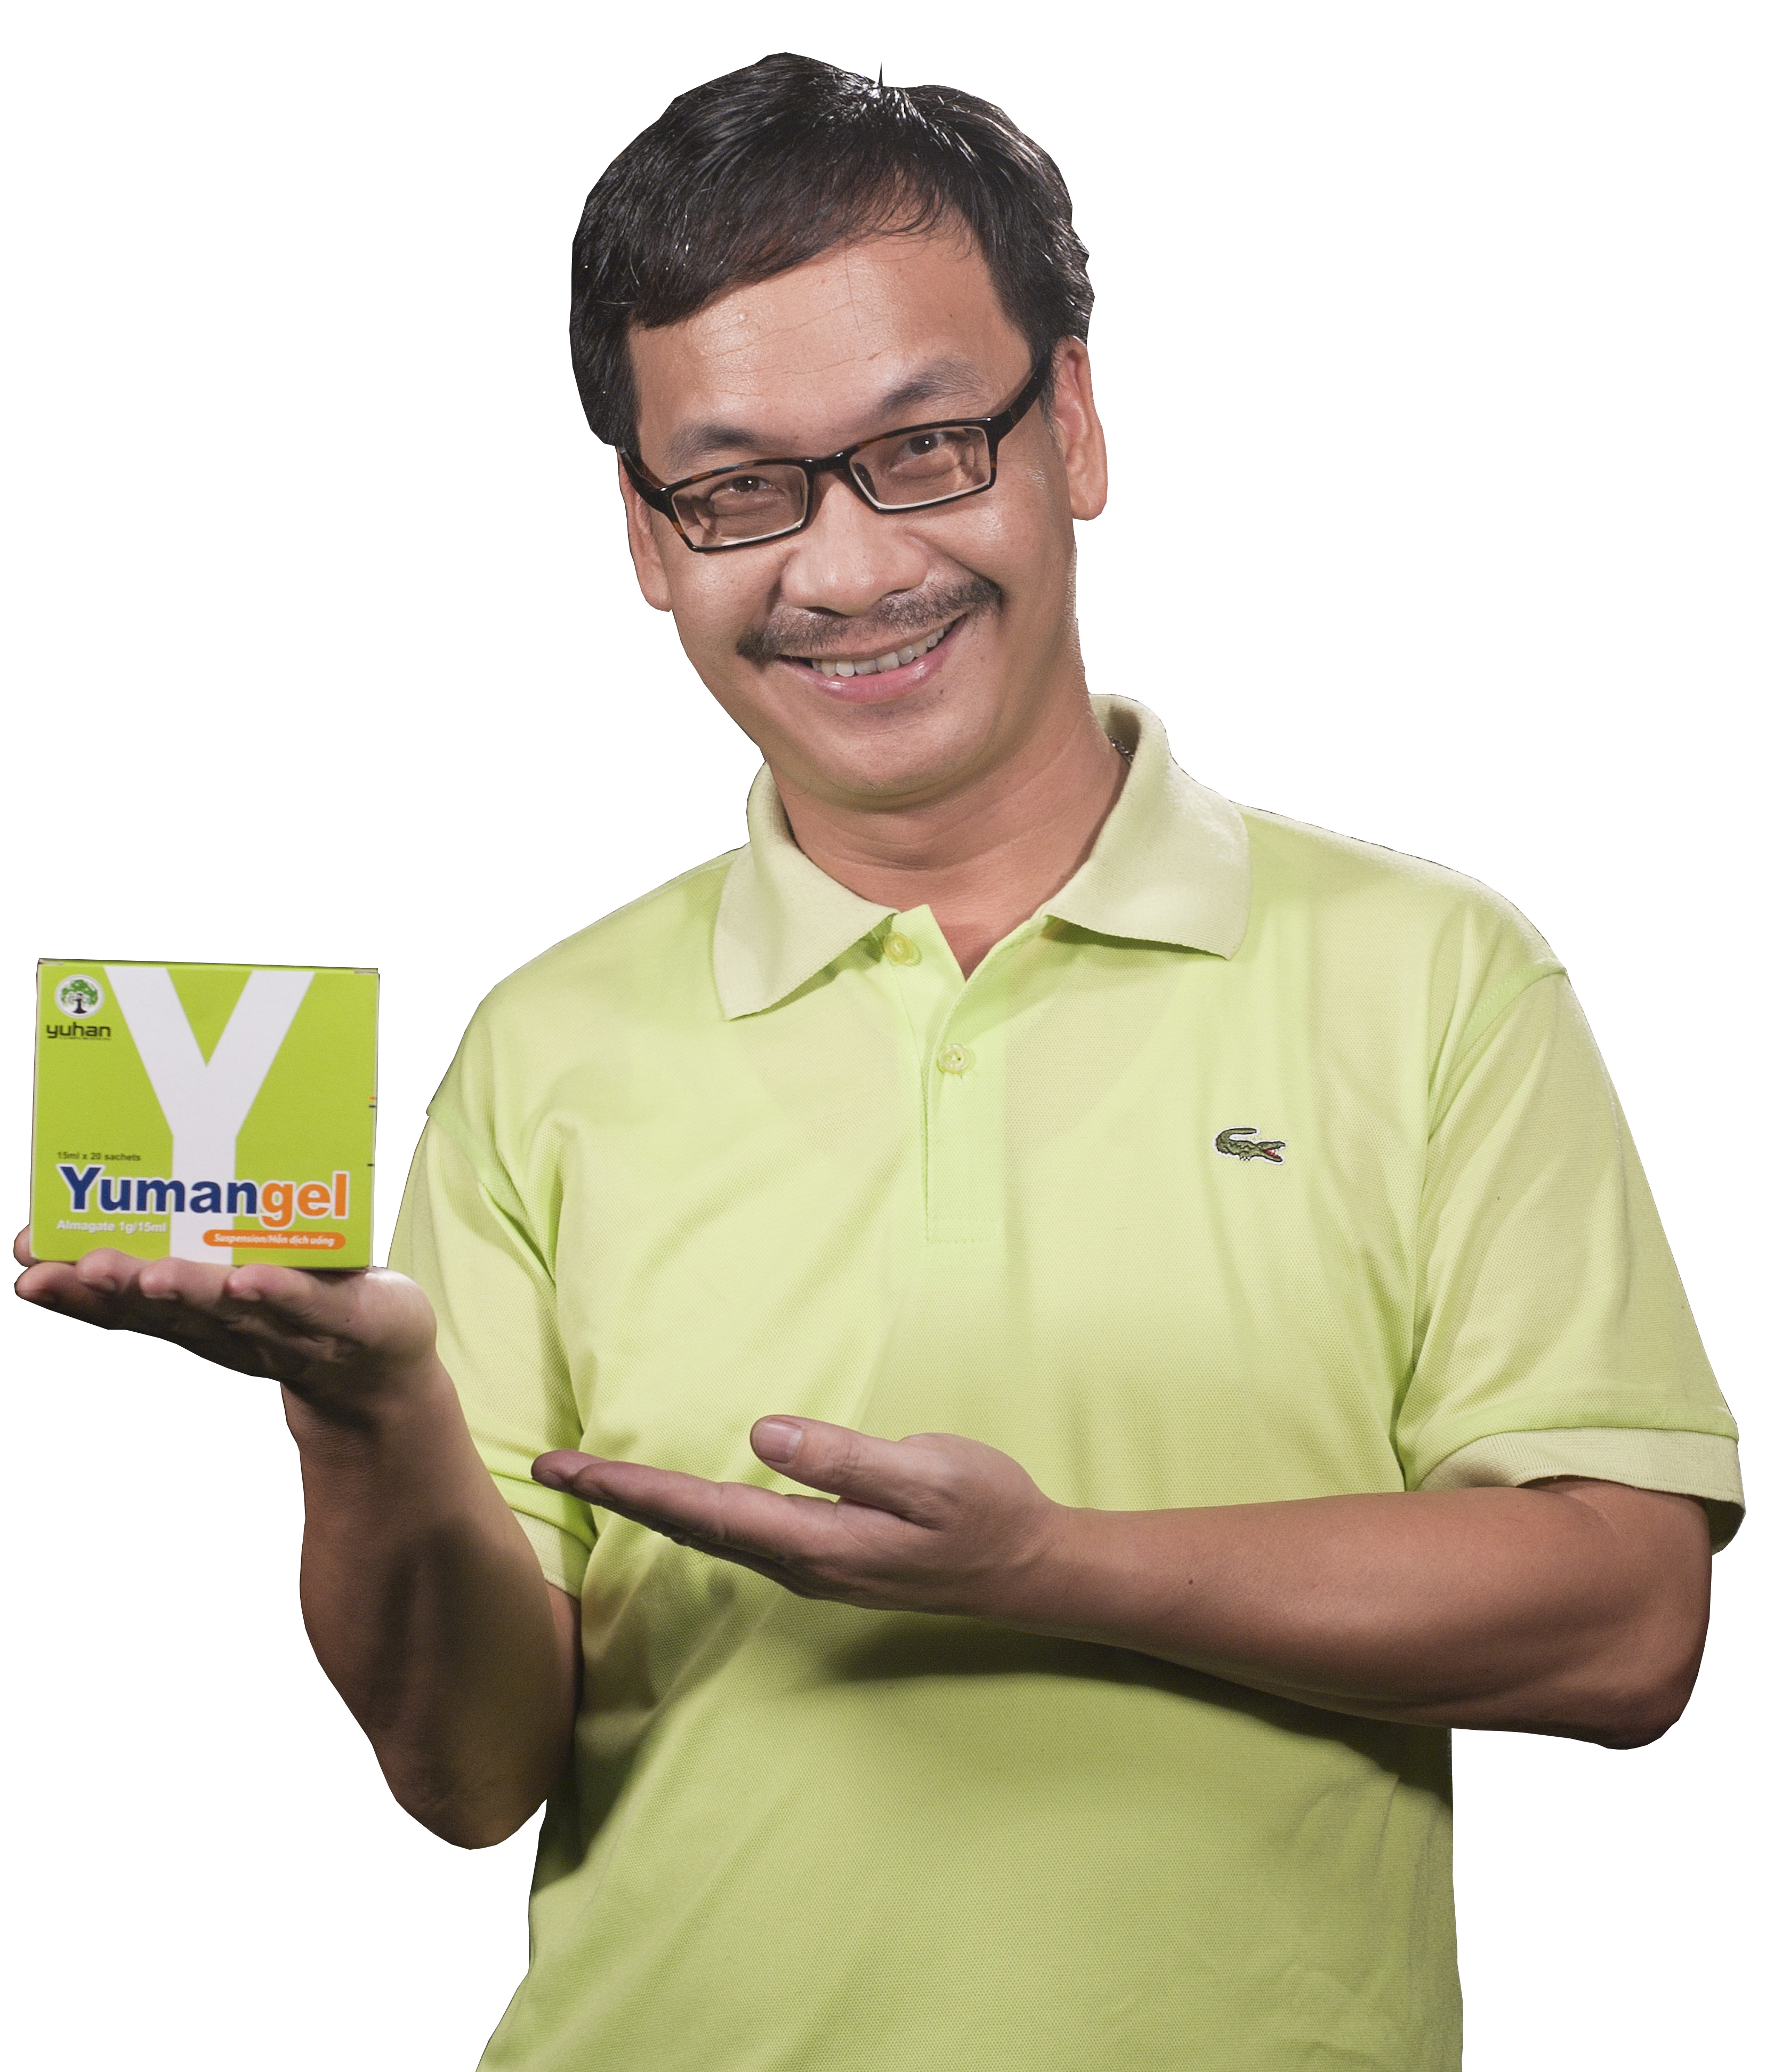 Yumangel – Thuốc dạ dày chữ Y được hàng triệu người sử dụng để giảm nhanh cơn đau dạ dày